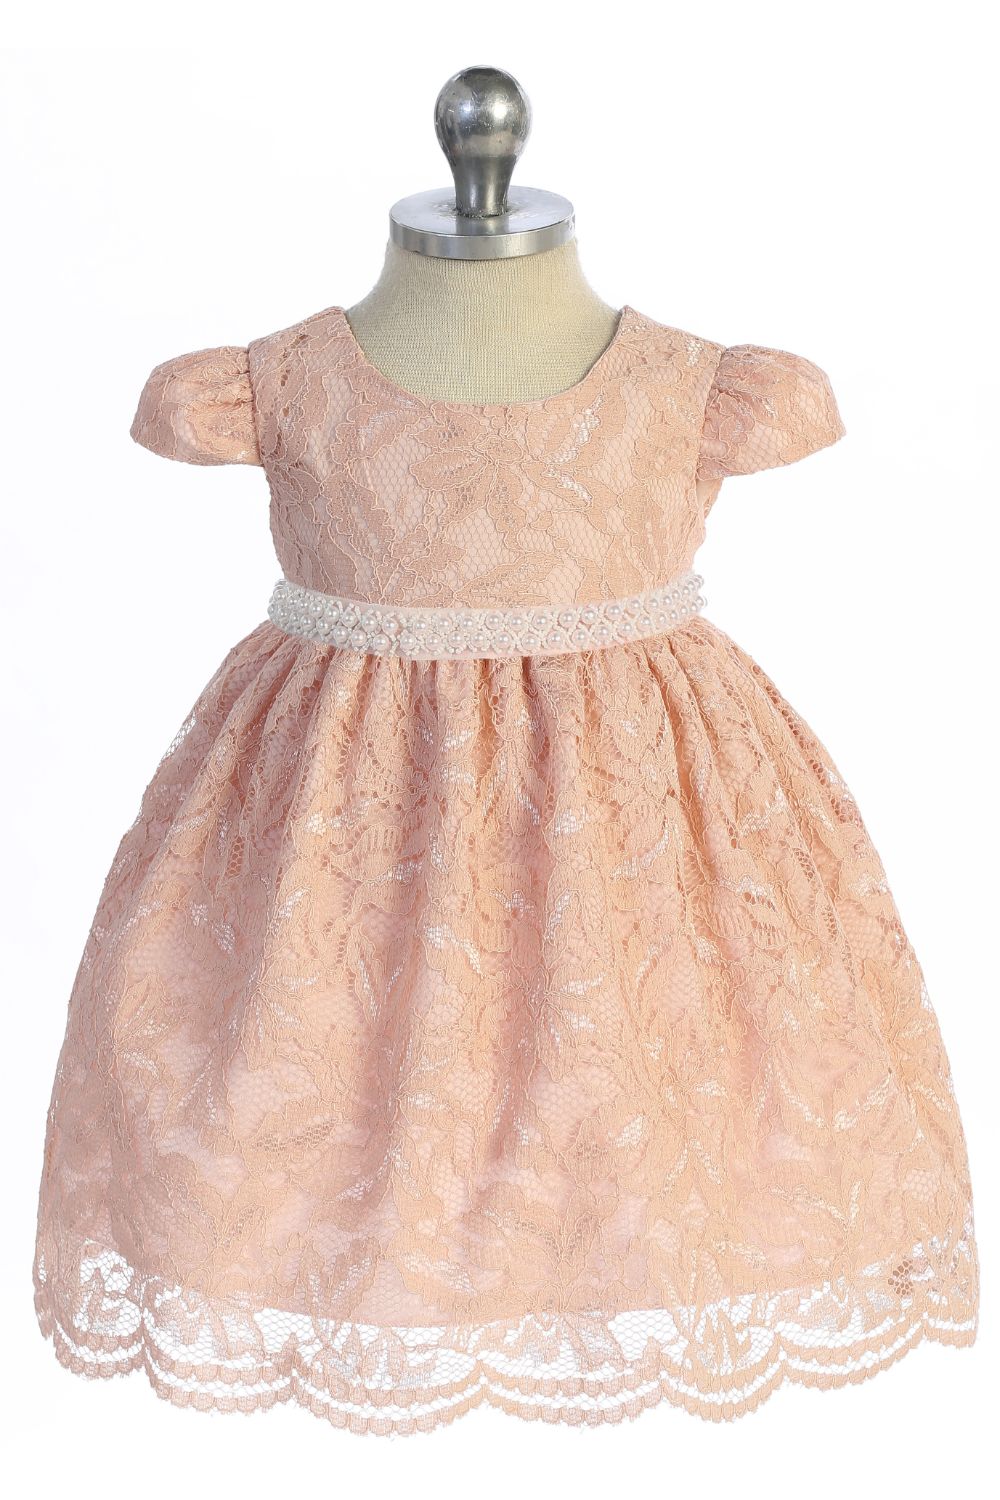 Baby Girl Lace V Back Bow Flower Dress - AS532-C Kids Dream